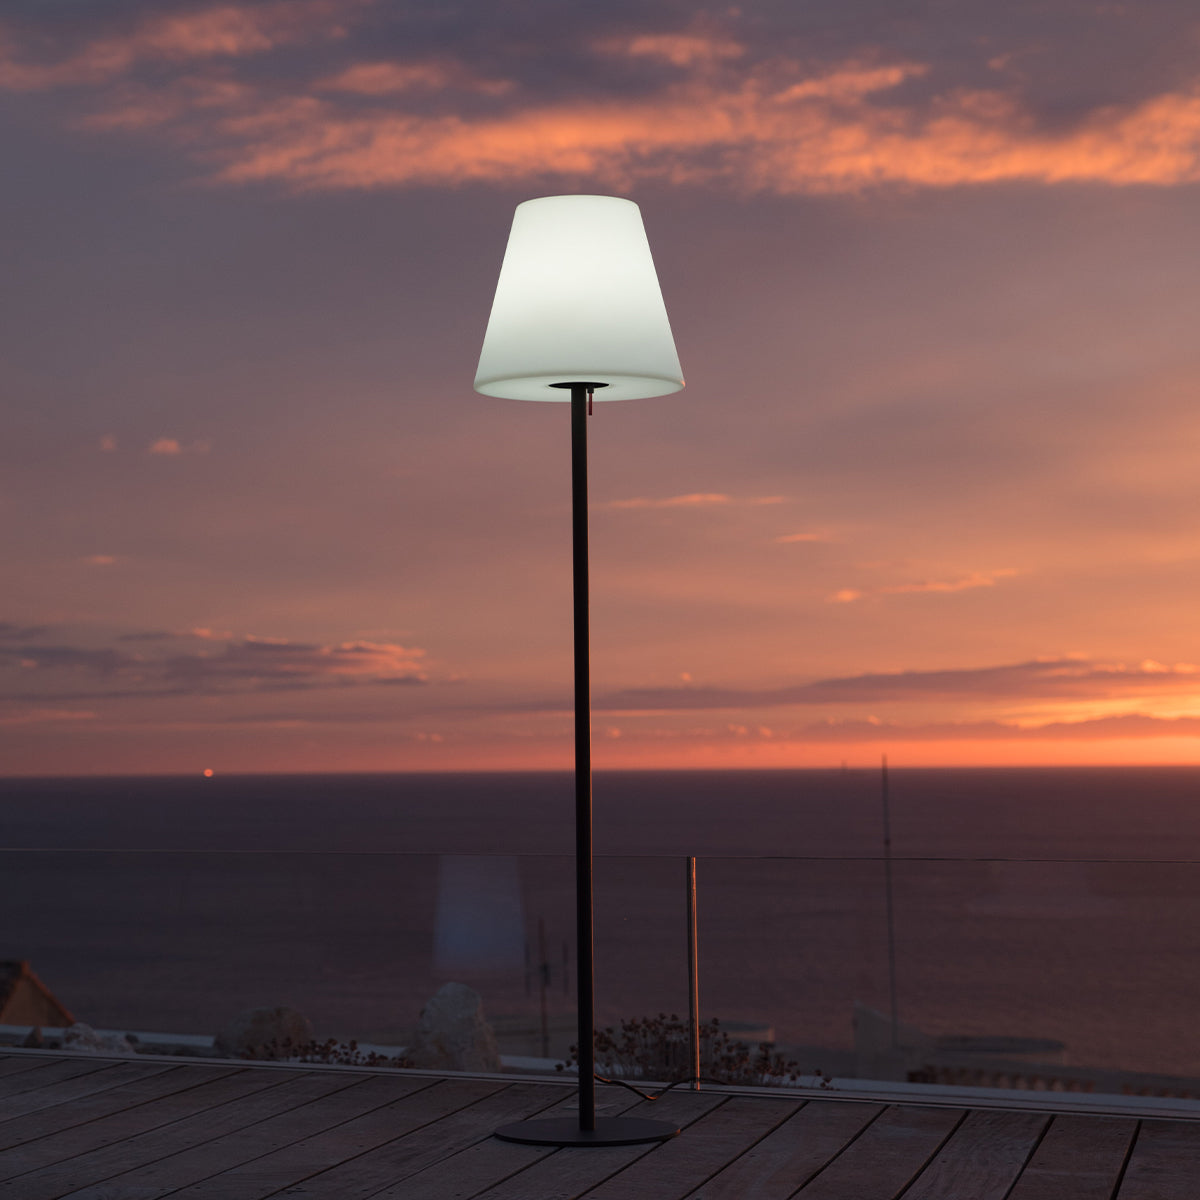 Drahtgebundene Stehlampe mit Stahlsockel für den Außenbereich Leistungsstarke weiße LED-Beleuchtung STANDY H150cm E27-Sockel